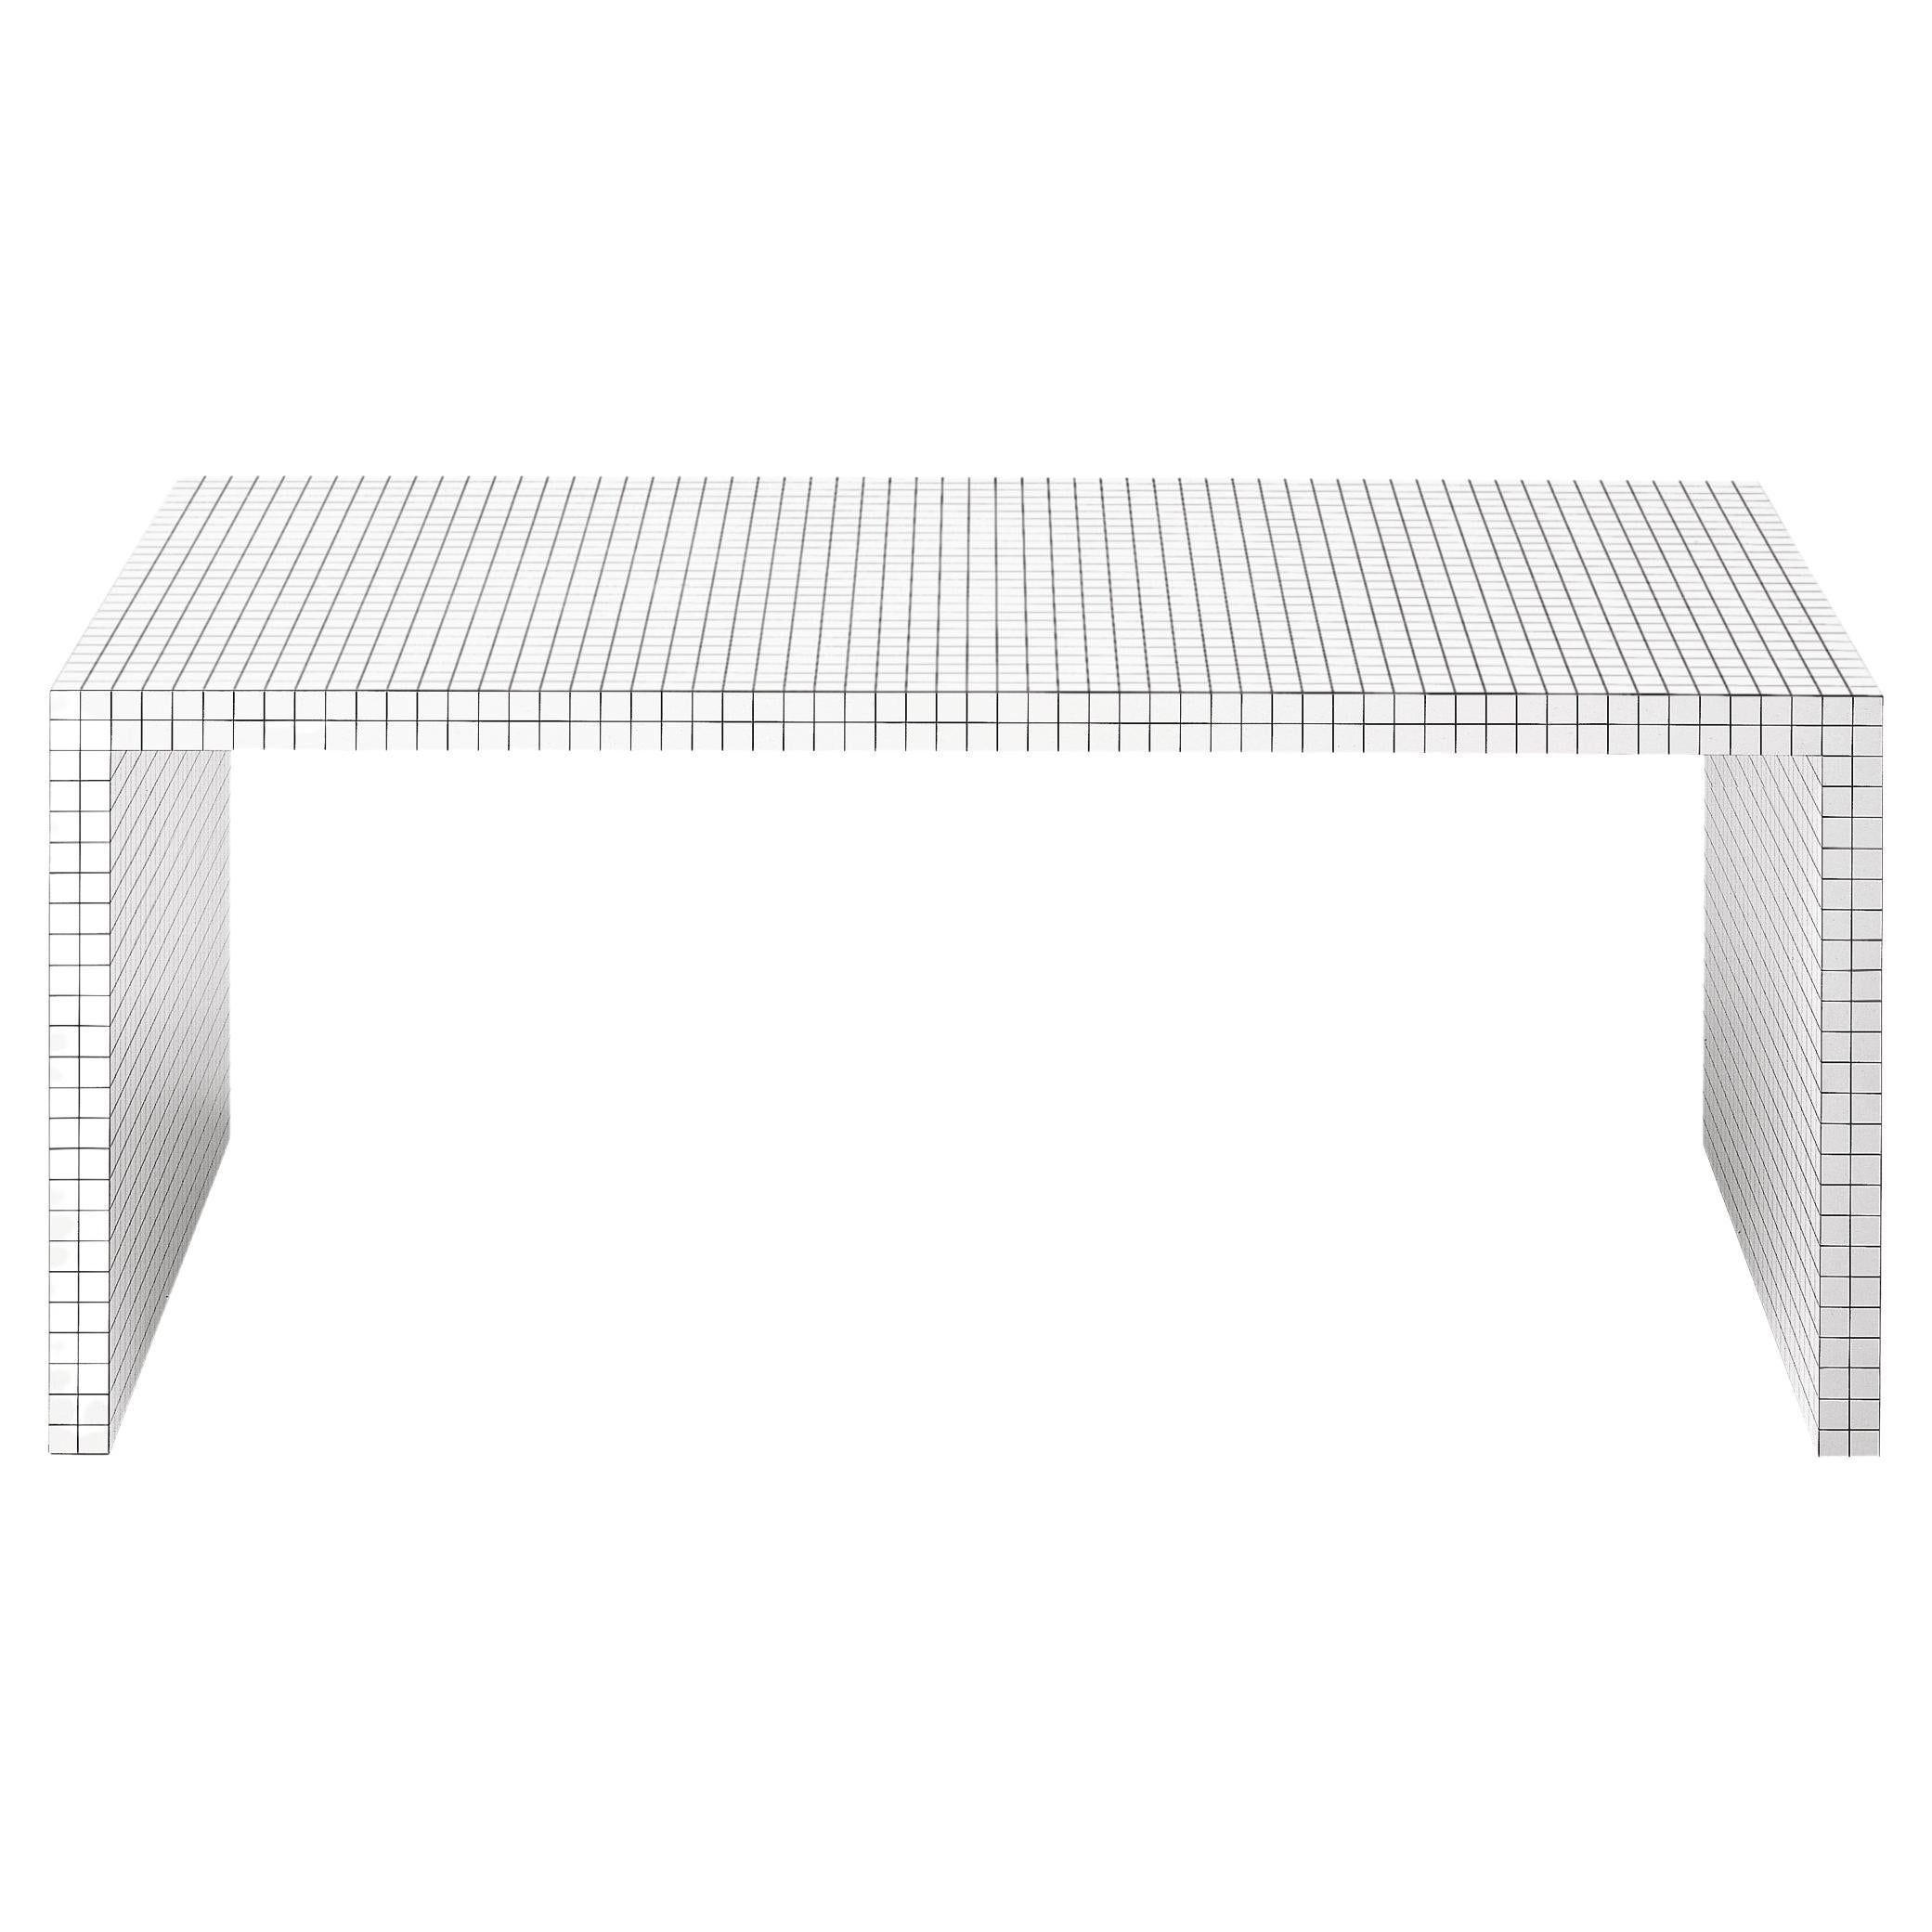 Zanotta Quaderna Table/Bureau d'écriture en stratifié plastique blanc par Superstudio

Structure en nid d'abeille recouverte d'un laminé plastique blanc, imprimé numériquement avec des carrés noirs à un espacement de 1 3/16